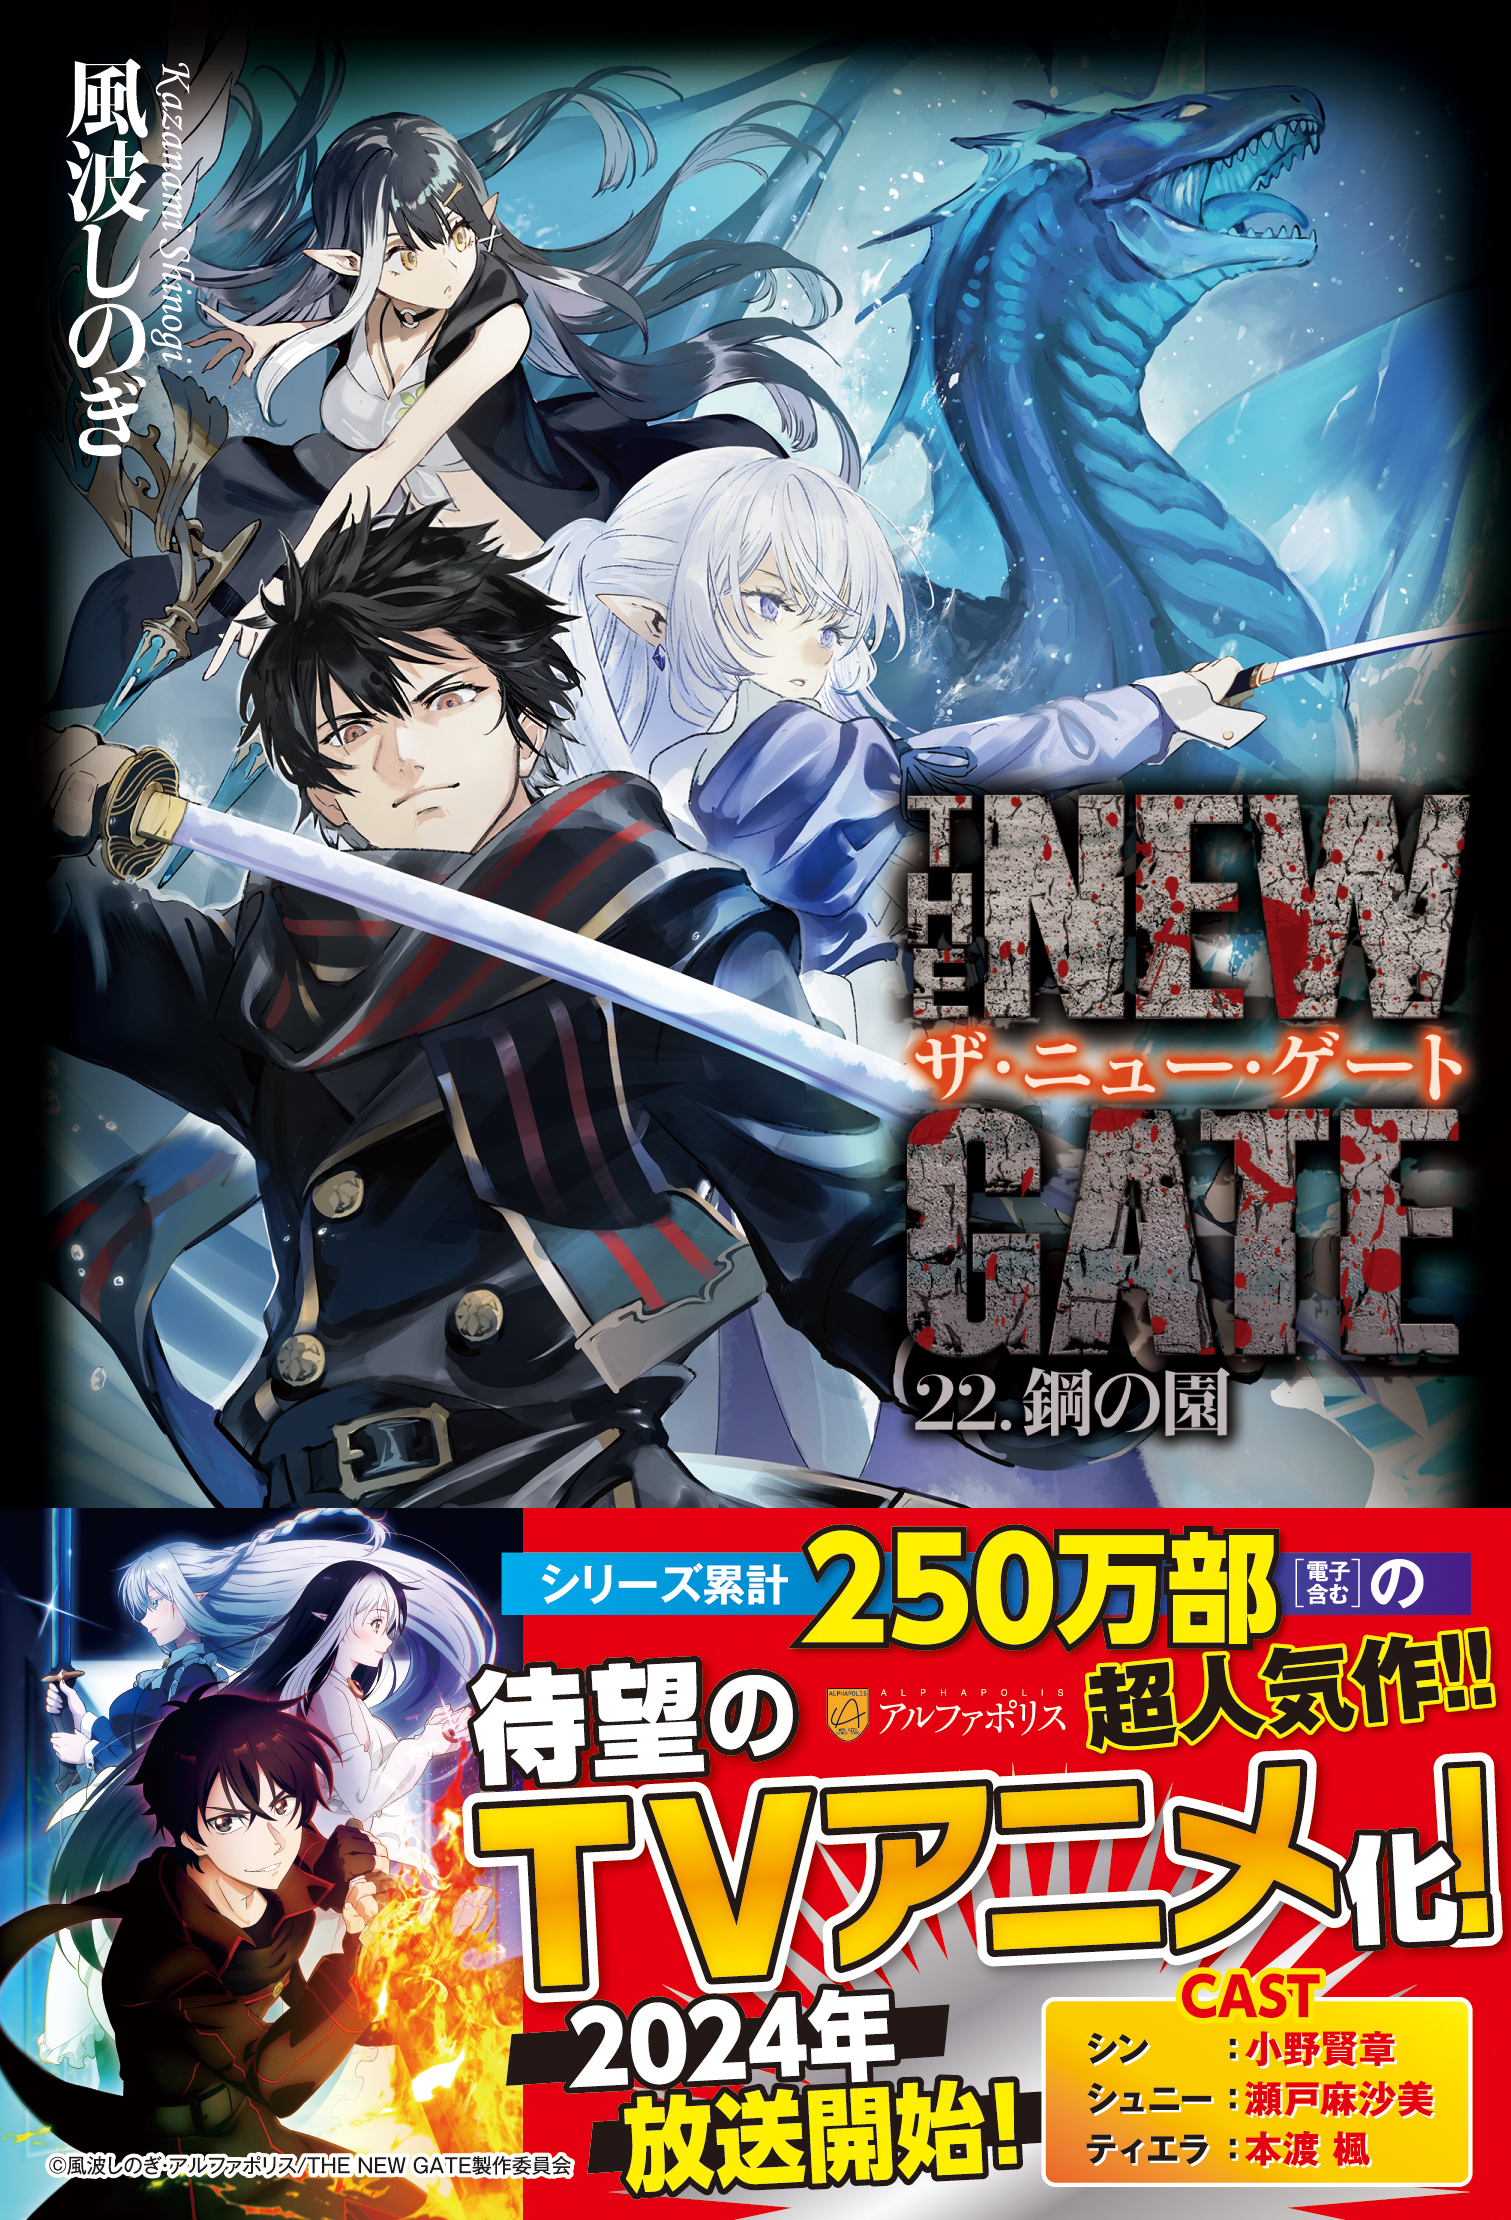 The New Gate, light novel isekai, vai ganhar anime em 2024 - Game Arena